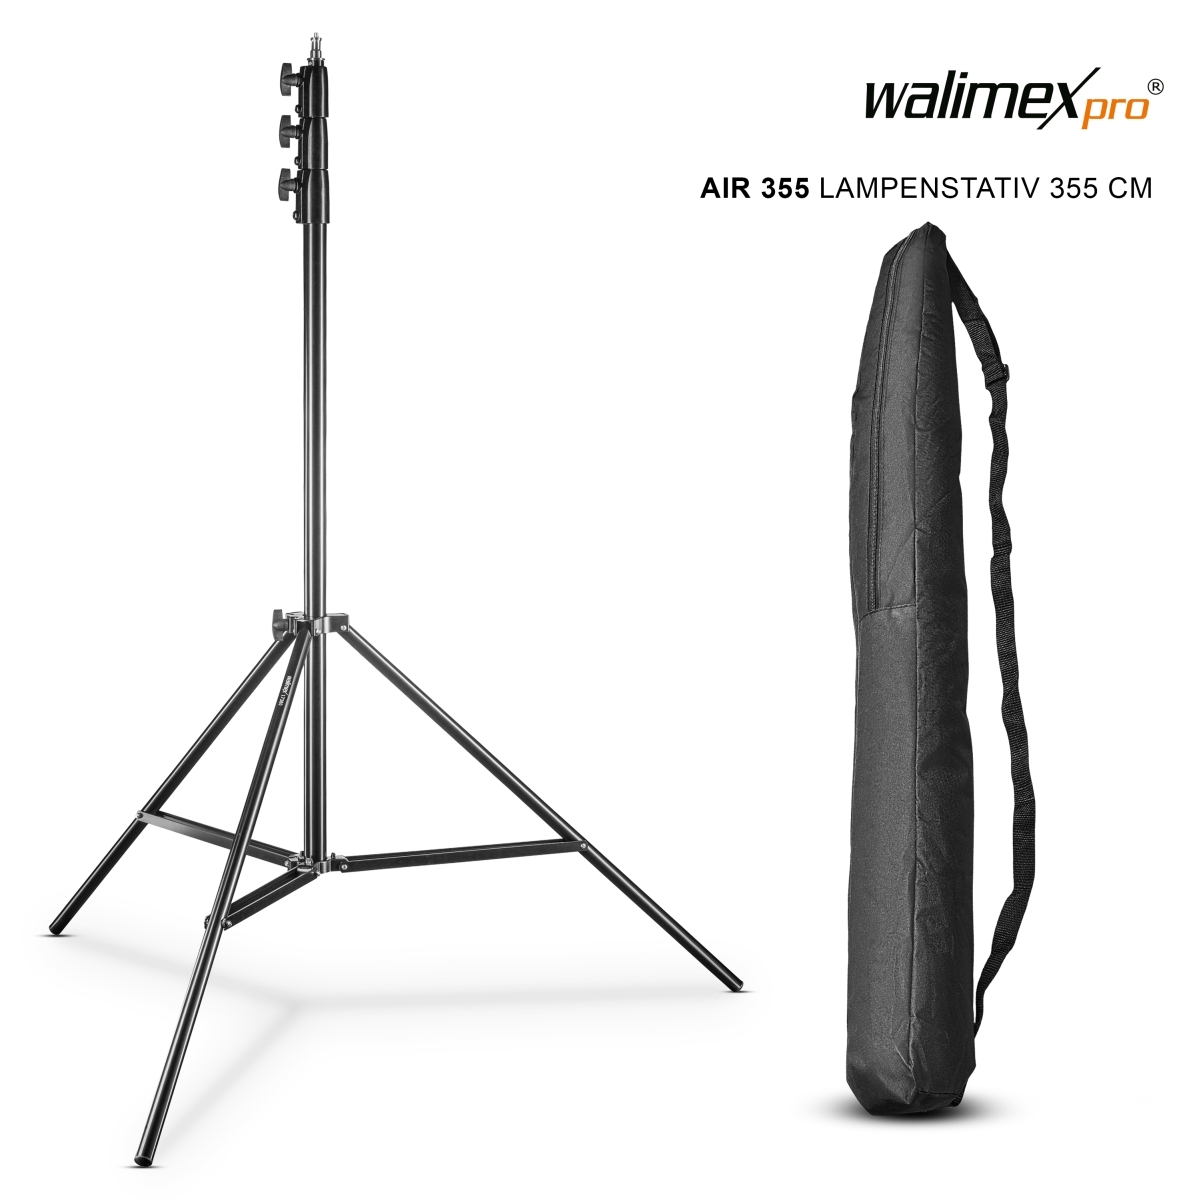 Walimex pro Lampenstativ AIR 355 cm mit Luftdämpfung